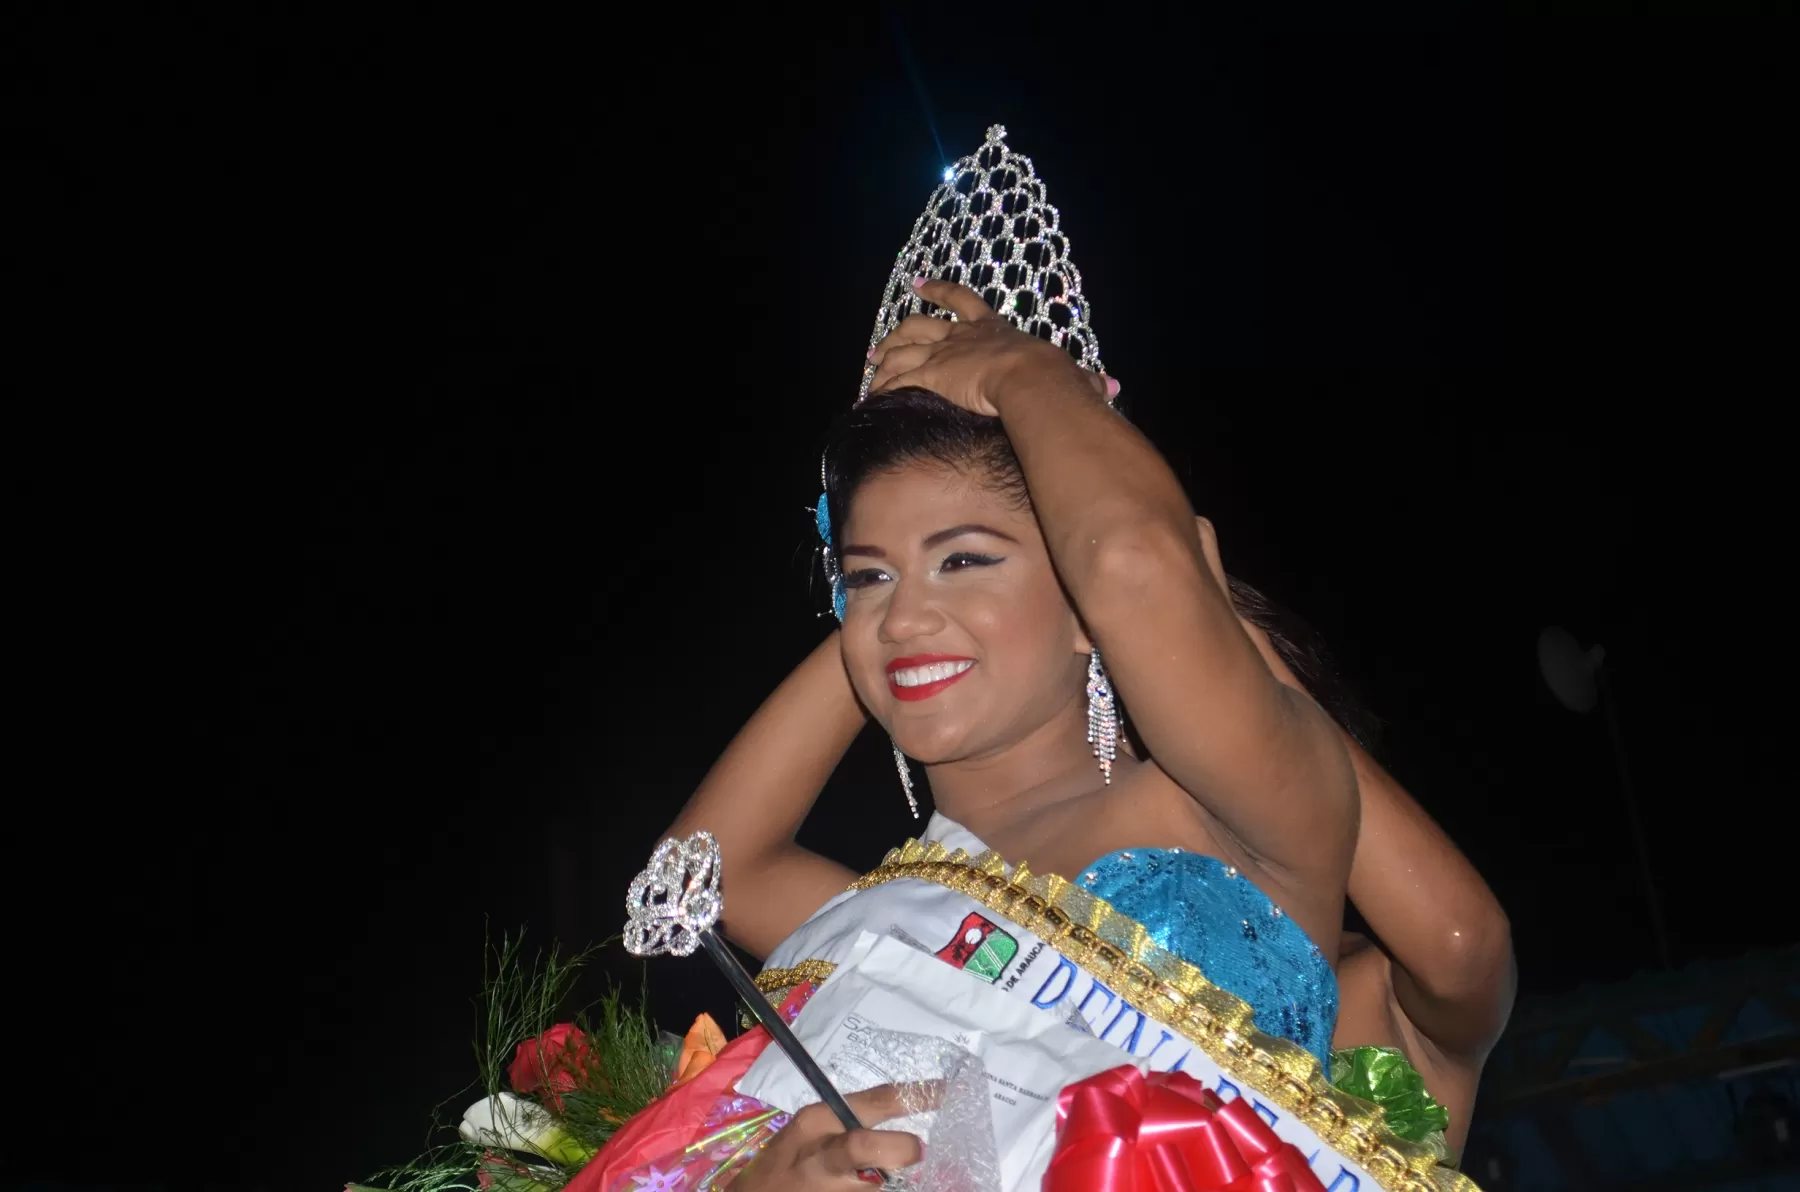 Lendy Tatiana Tovar Marín fue coronada como señorita Arauca 2016, y participará en el Reinado Internacional del Joropo, que se realiza en las fiestas de Arauca.